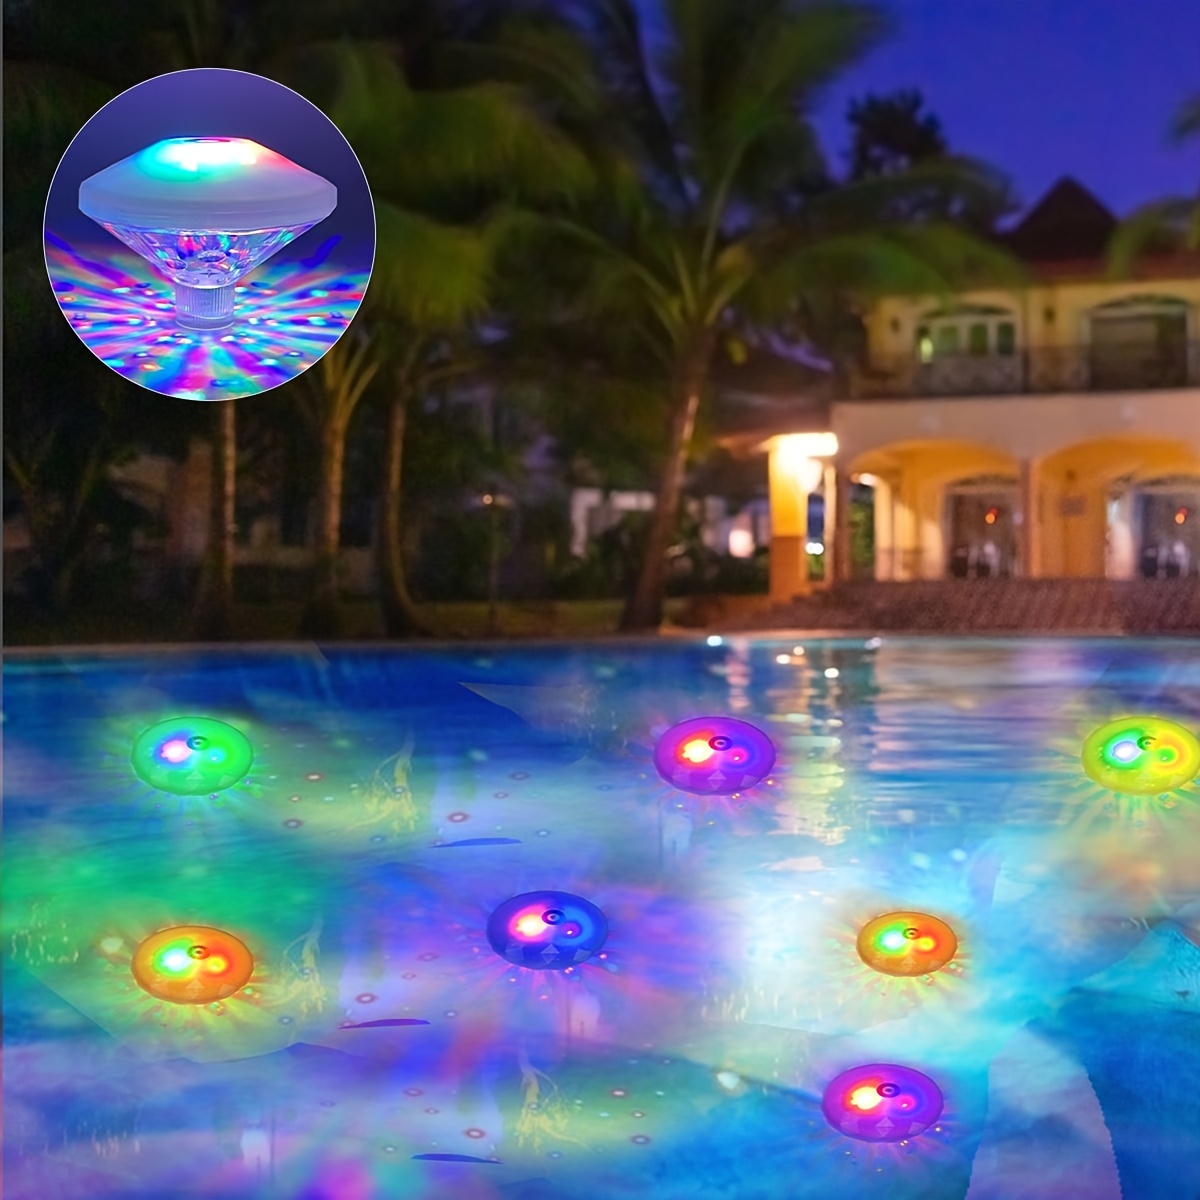 Lumières de piscine étanches, lumières de bain pour bébé pour la baignoire  (7 modes d'éclairage), jouets de bain à LED colorées pour piscine, étang,  bain à remous ou décorations de fête 